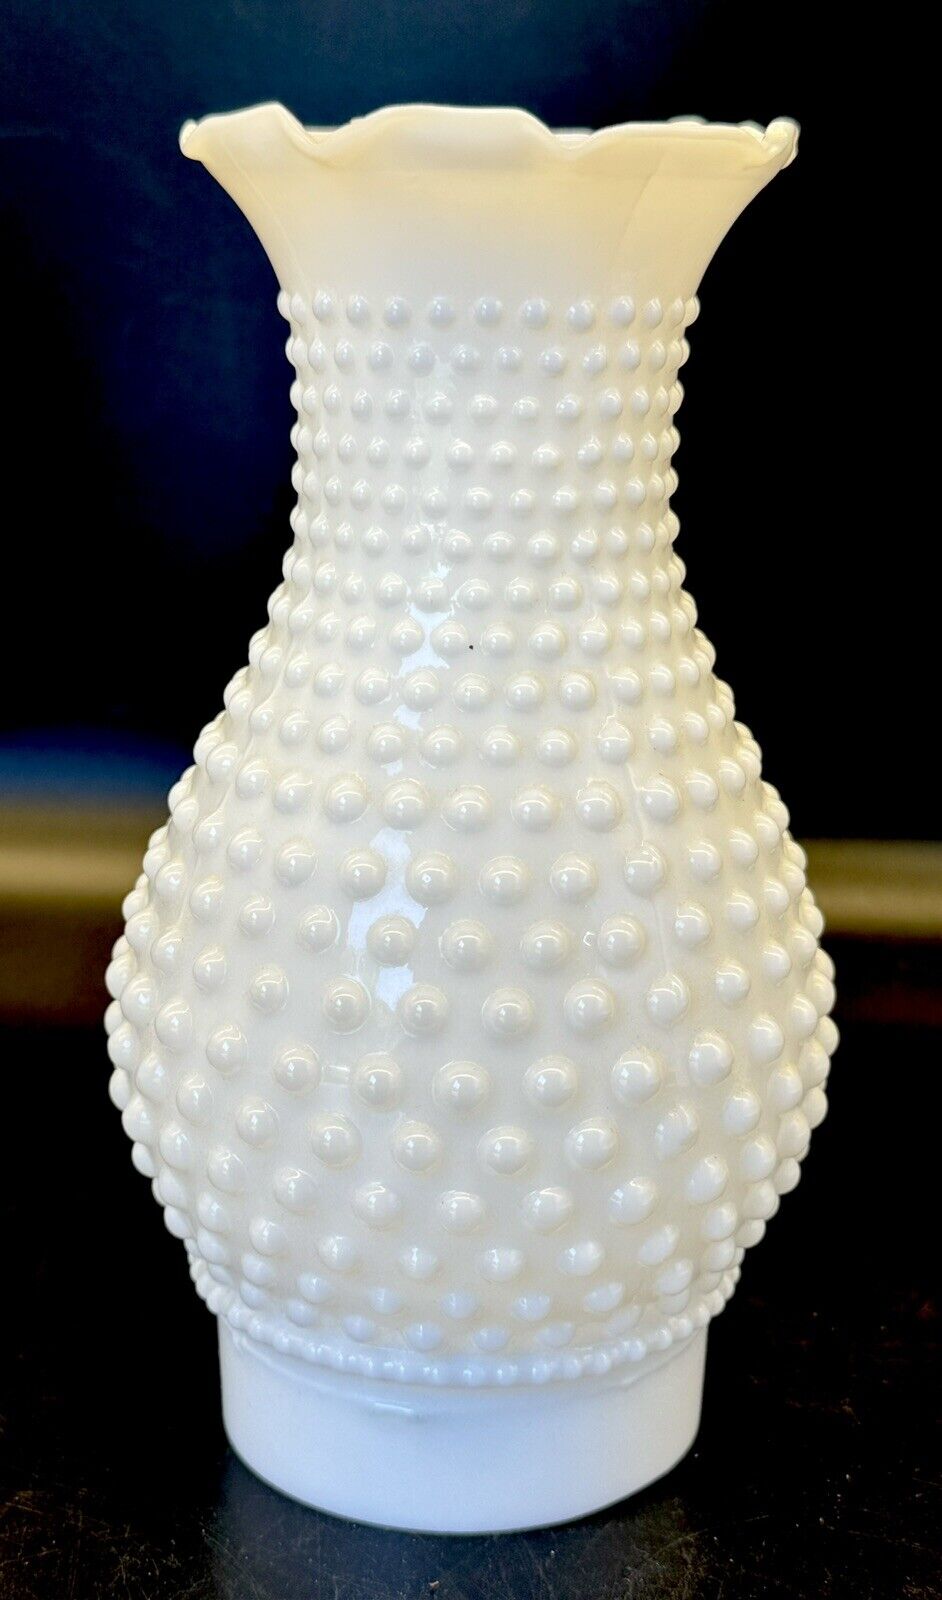 Vintage 60's Hurricane Oil Lamp Chimney HOBNAIL 7” Tall  Milk Glass White 3